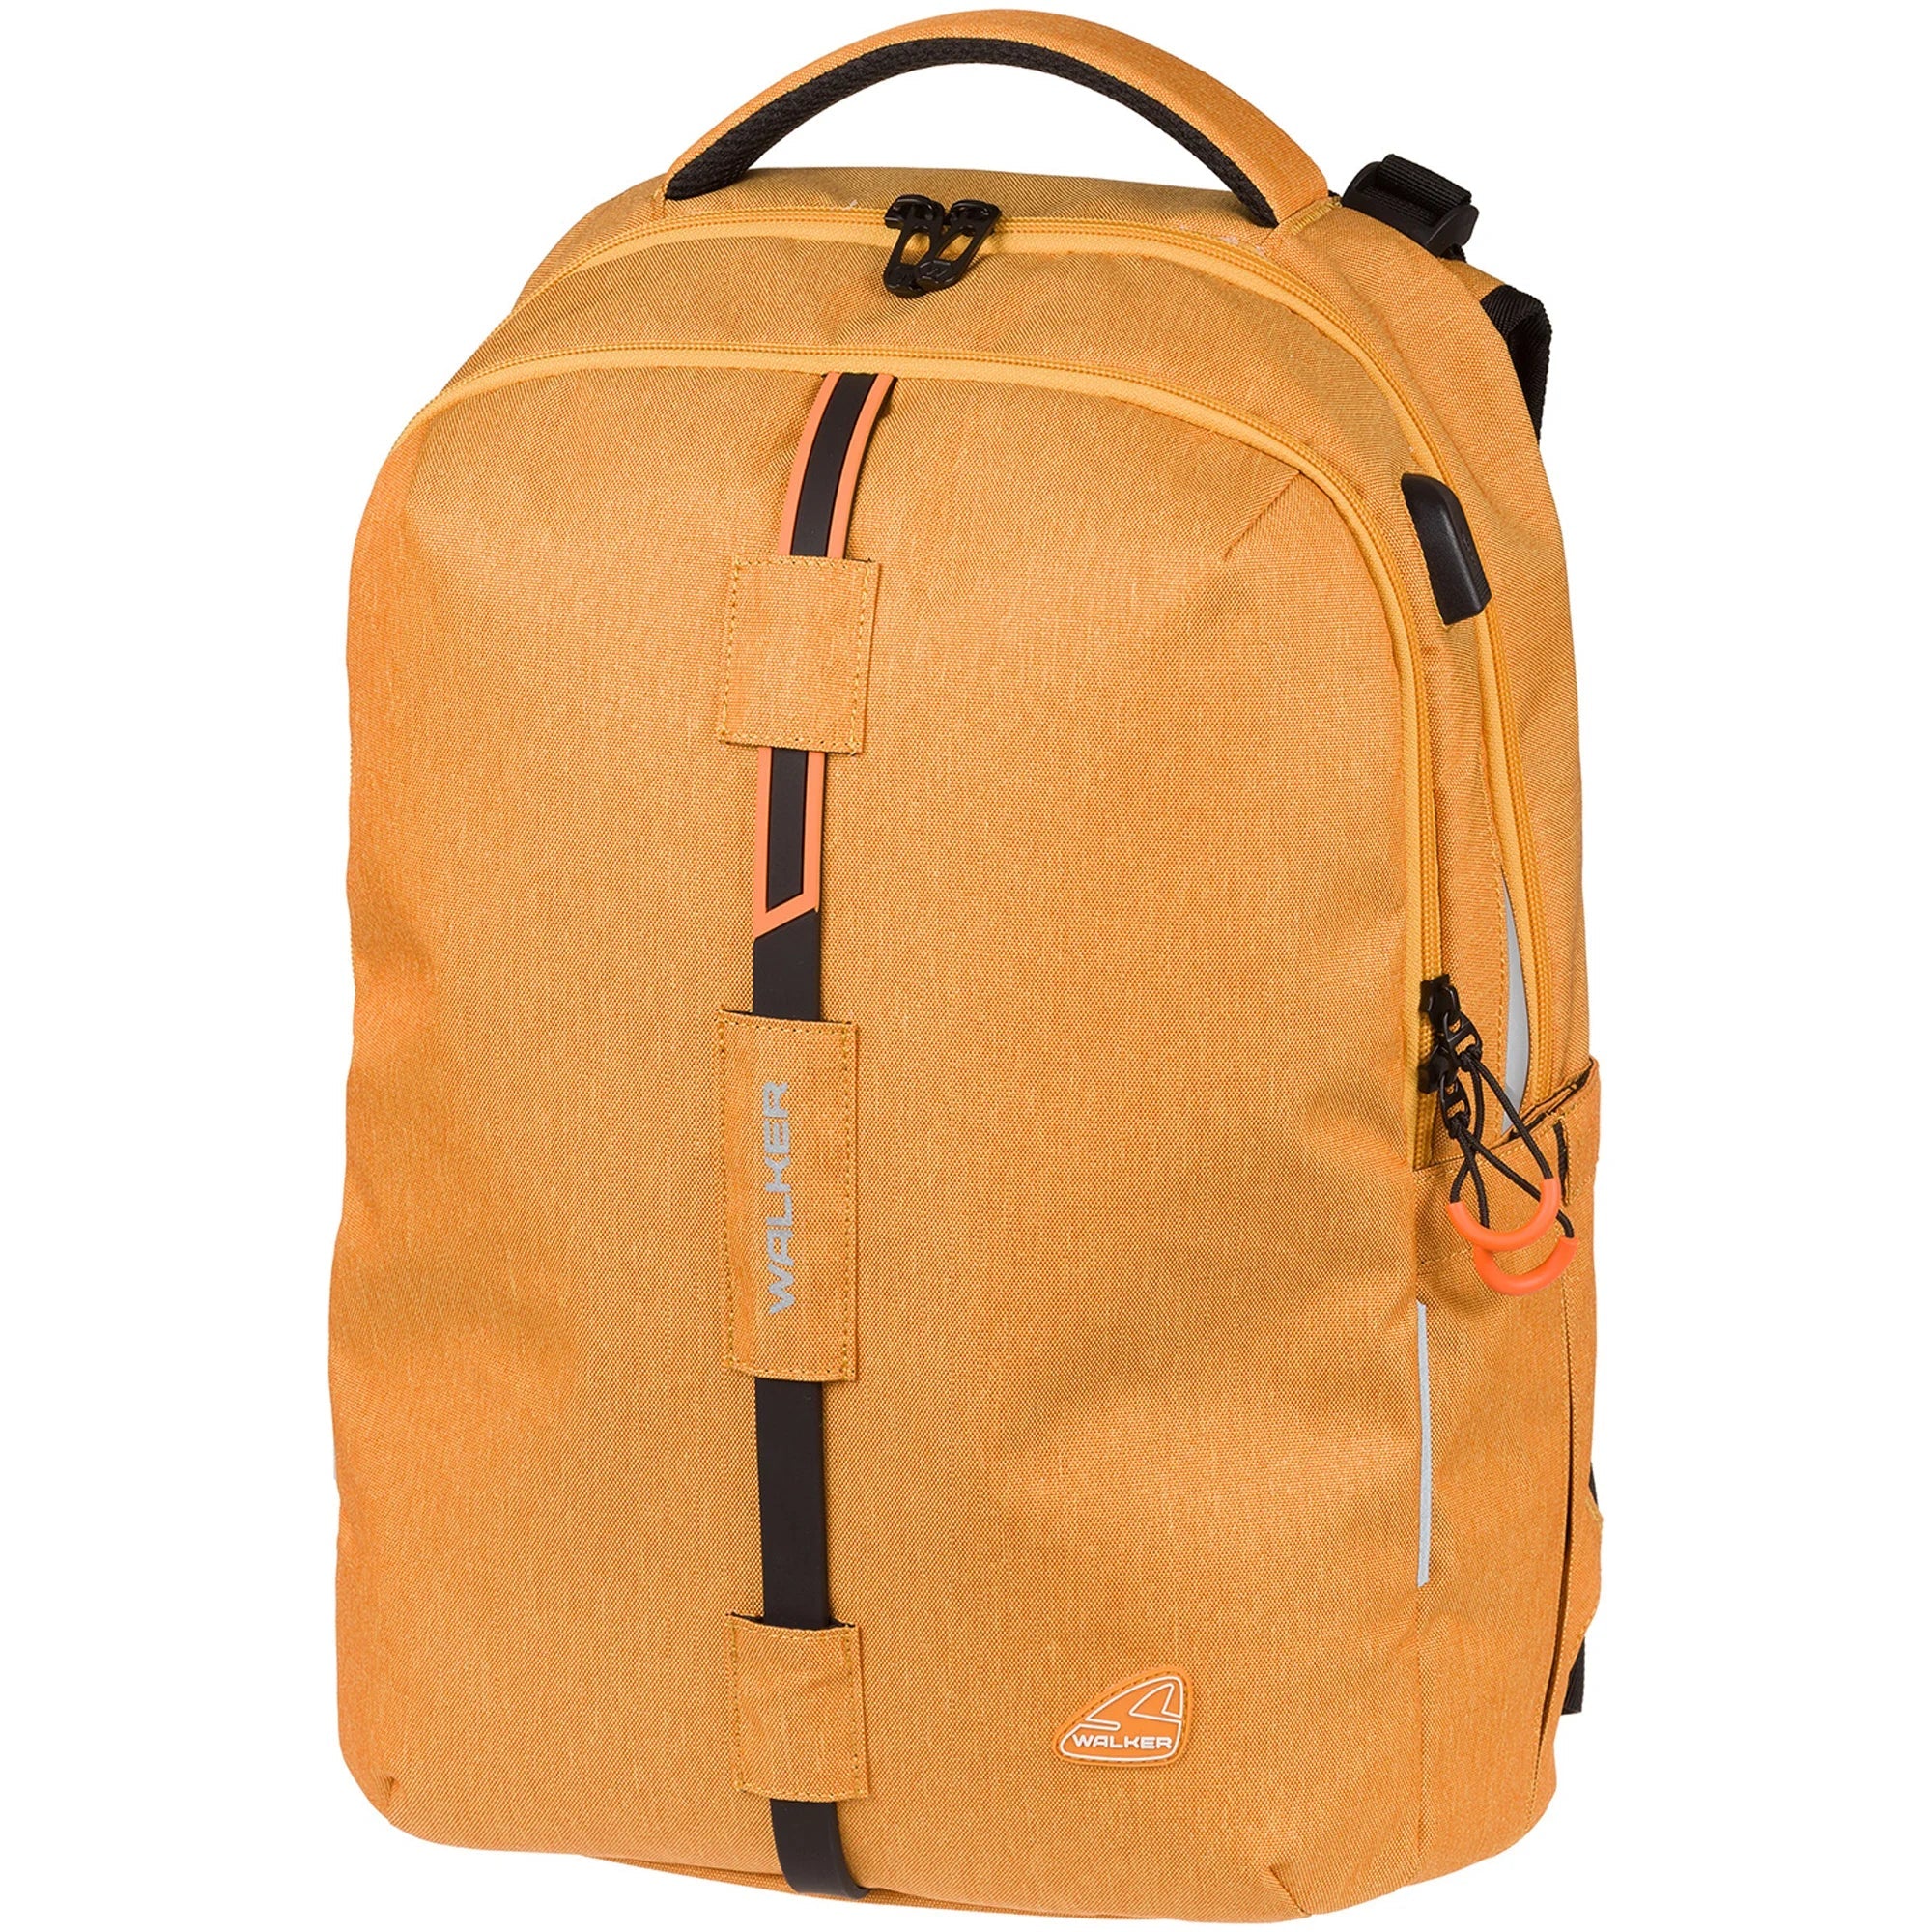 Walker Bags Elite Sac à Dos Melange 46 cm - Moutarde Melange